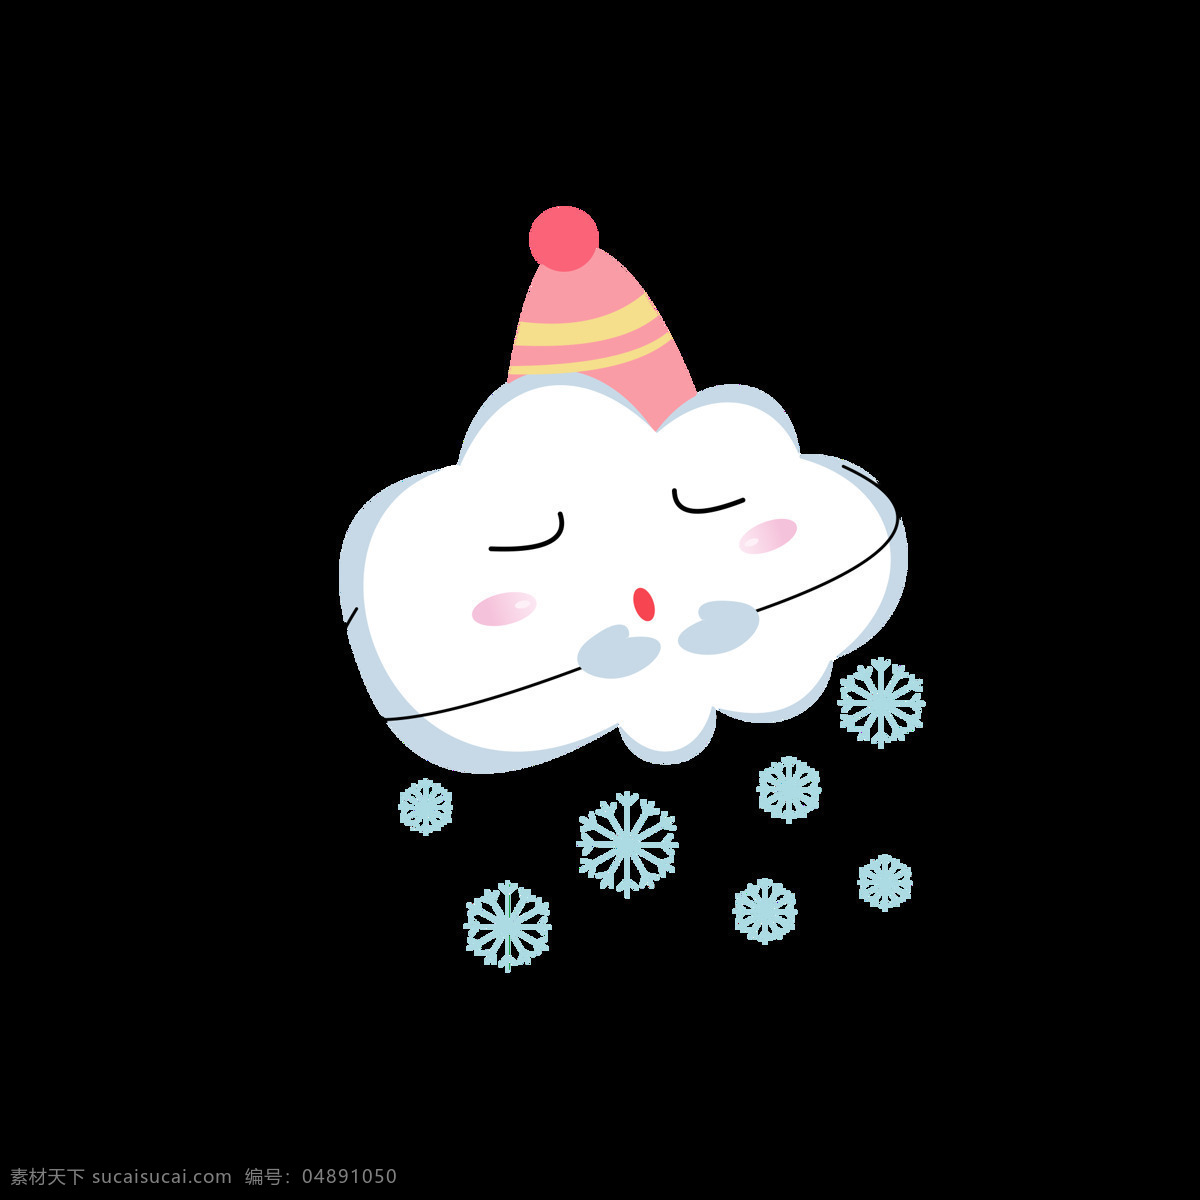 原创 白云 元素 卡通 可爱 天气 表情 包 云朵 元素设计 卡通可爱 冬天 表情包 下雪天